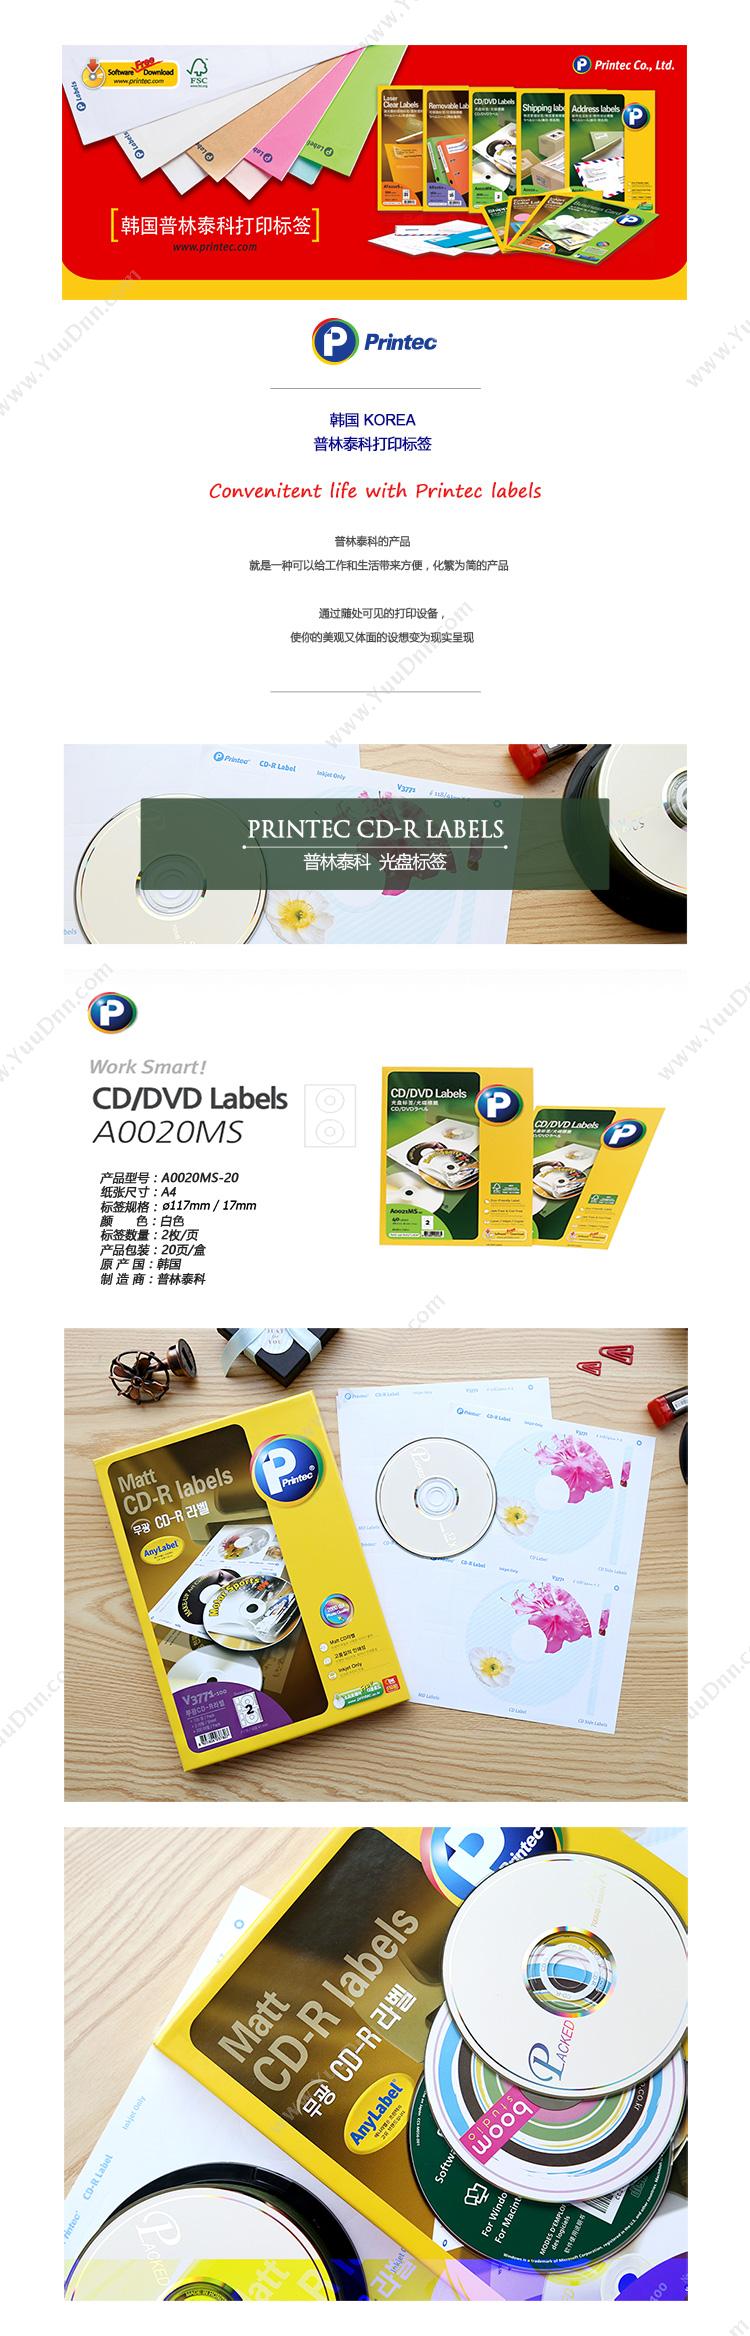 普林泰科 Printec 普林泰科 A0020MS-20 光盘打印标签 20张/盒 直径117mm/17mm 2枚/页 激光打印标签